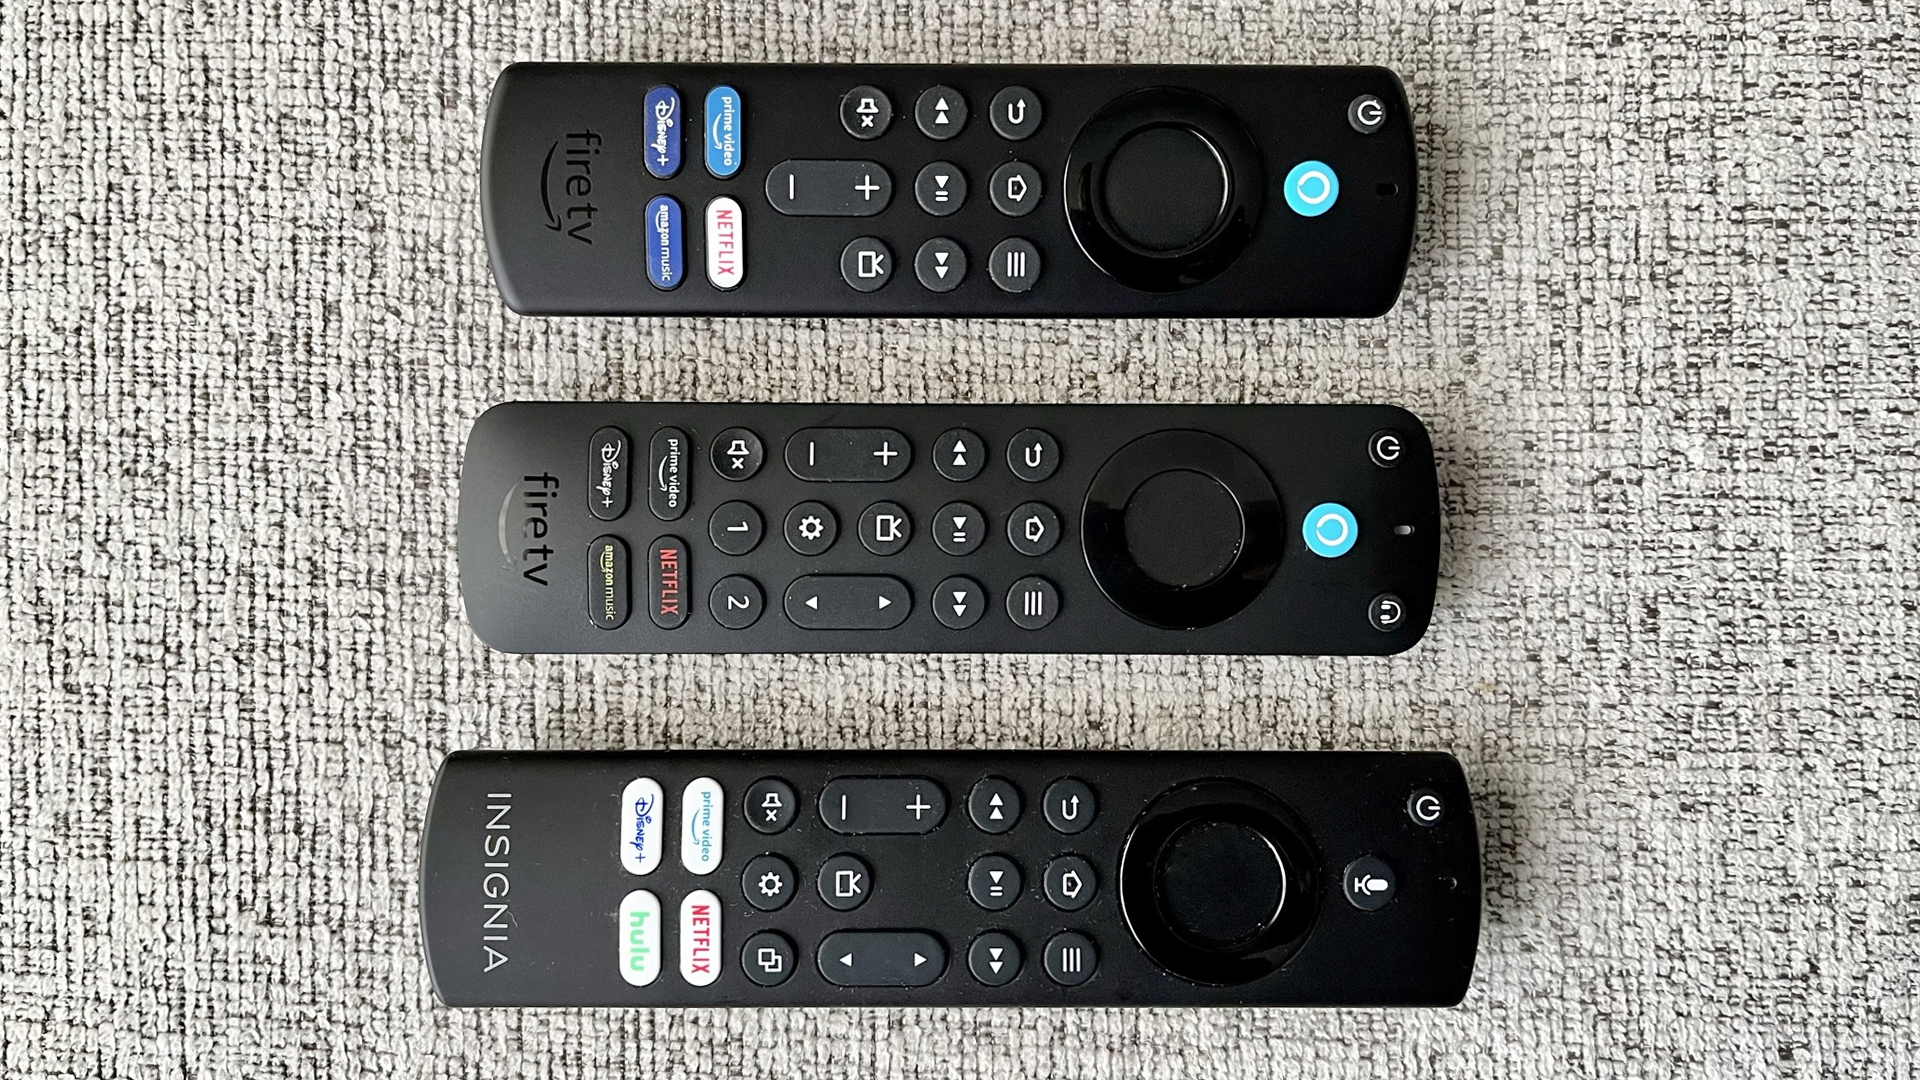 Three Alexa Fire TV remotes compared